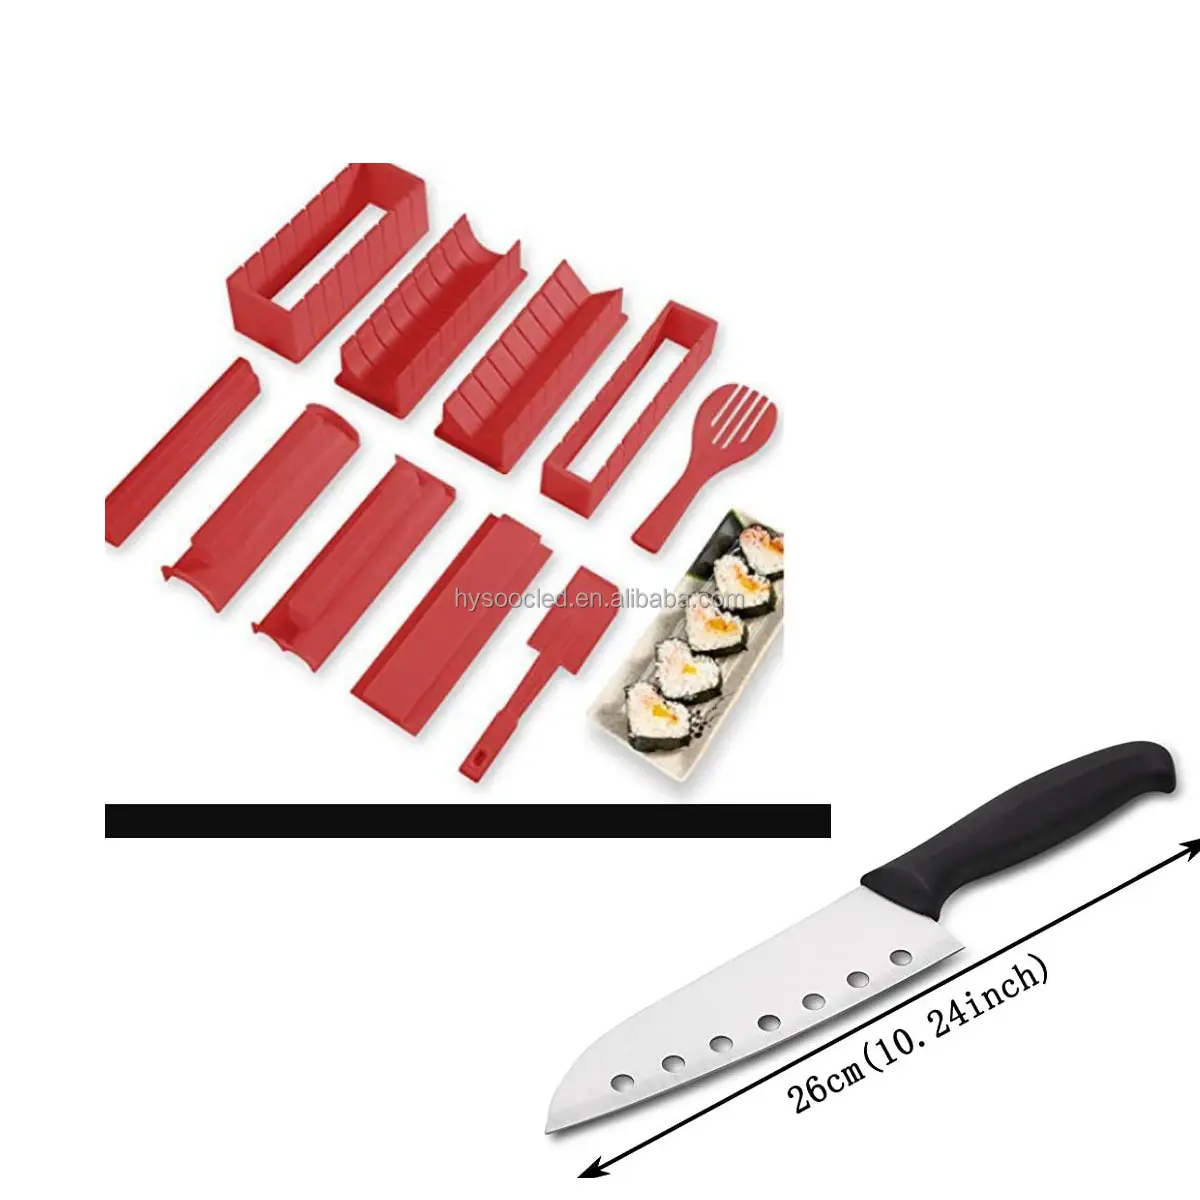 12 Stück Set Red Sushi Maker Equipment Kit Reisbällchen Kuchen Rollform Sushi Multifunktion ale Form Herstellung Sushi Kit Küchen utensilien